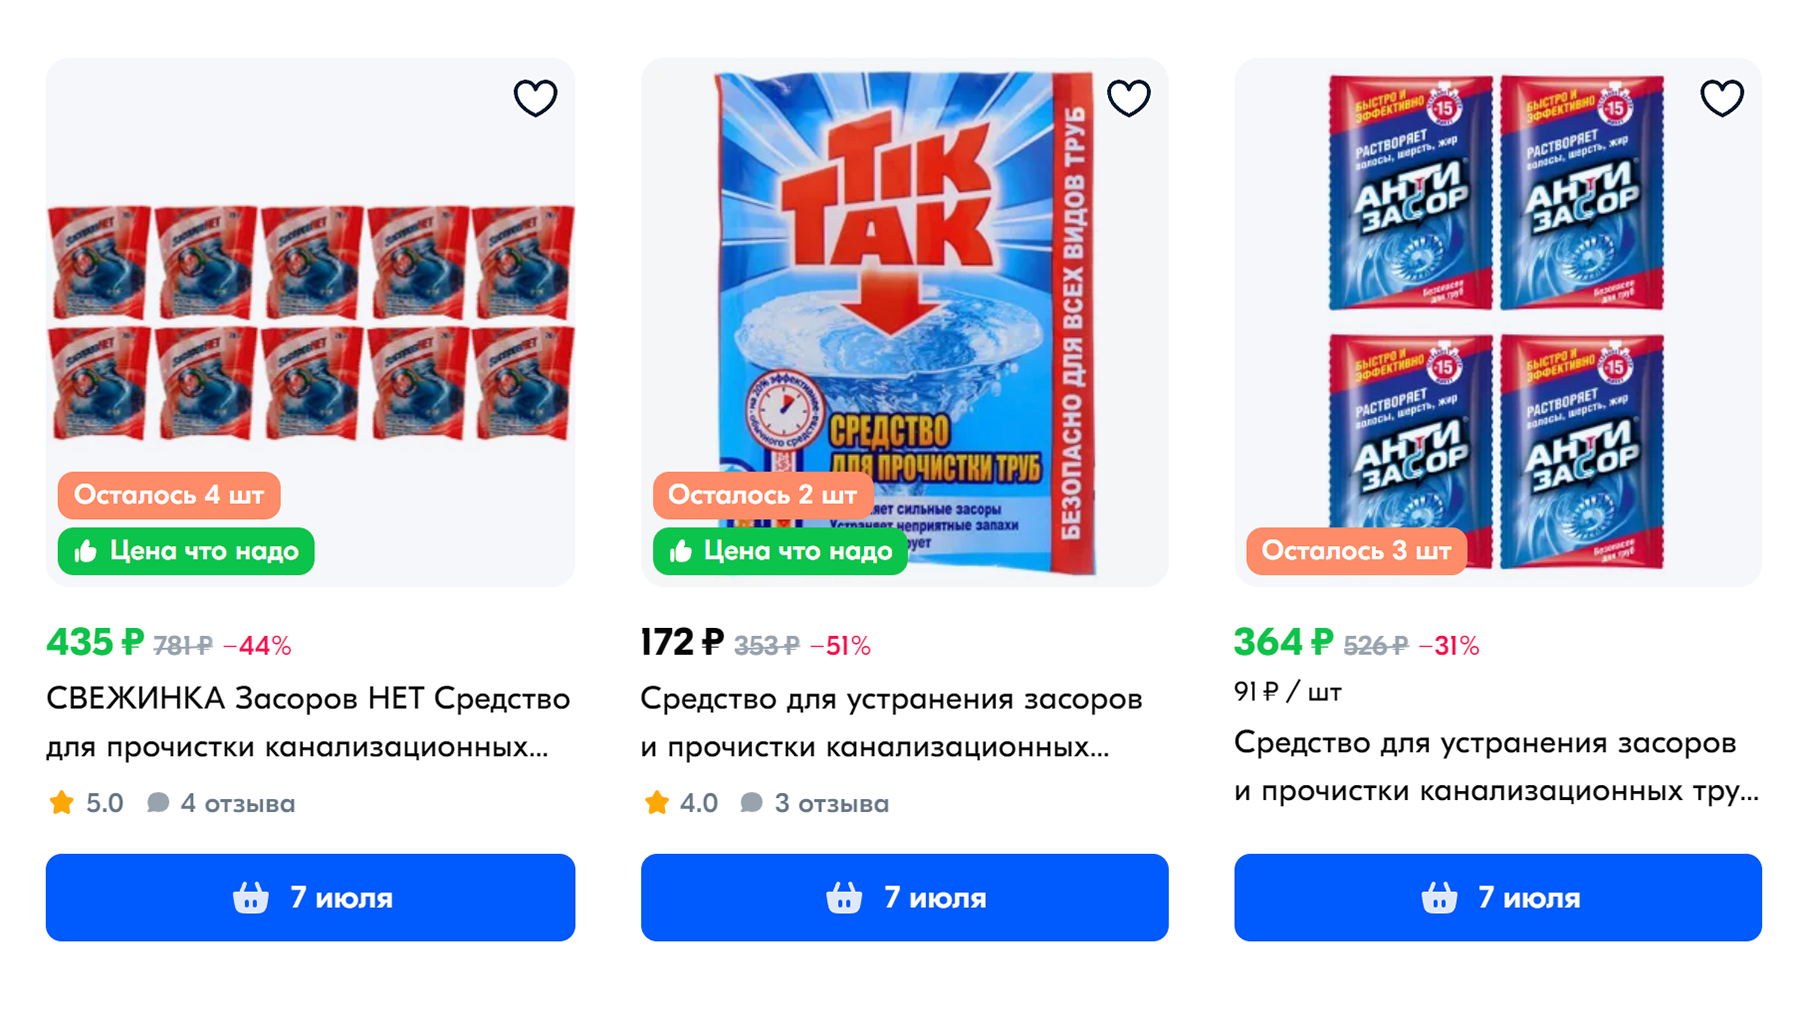 Цены на средства для прочистки труб. Источник: ozon.ru